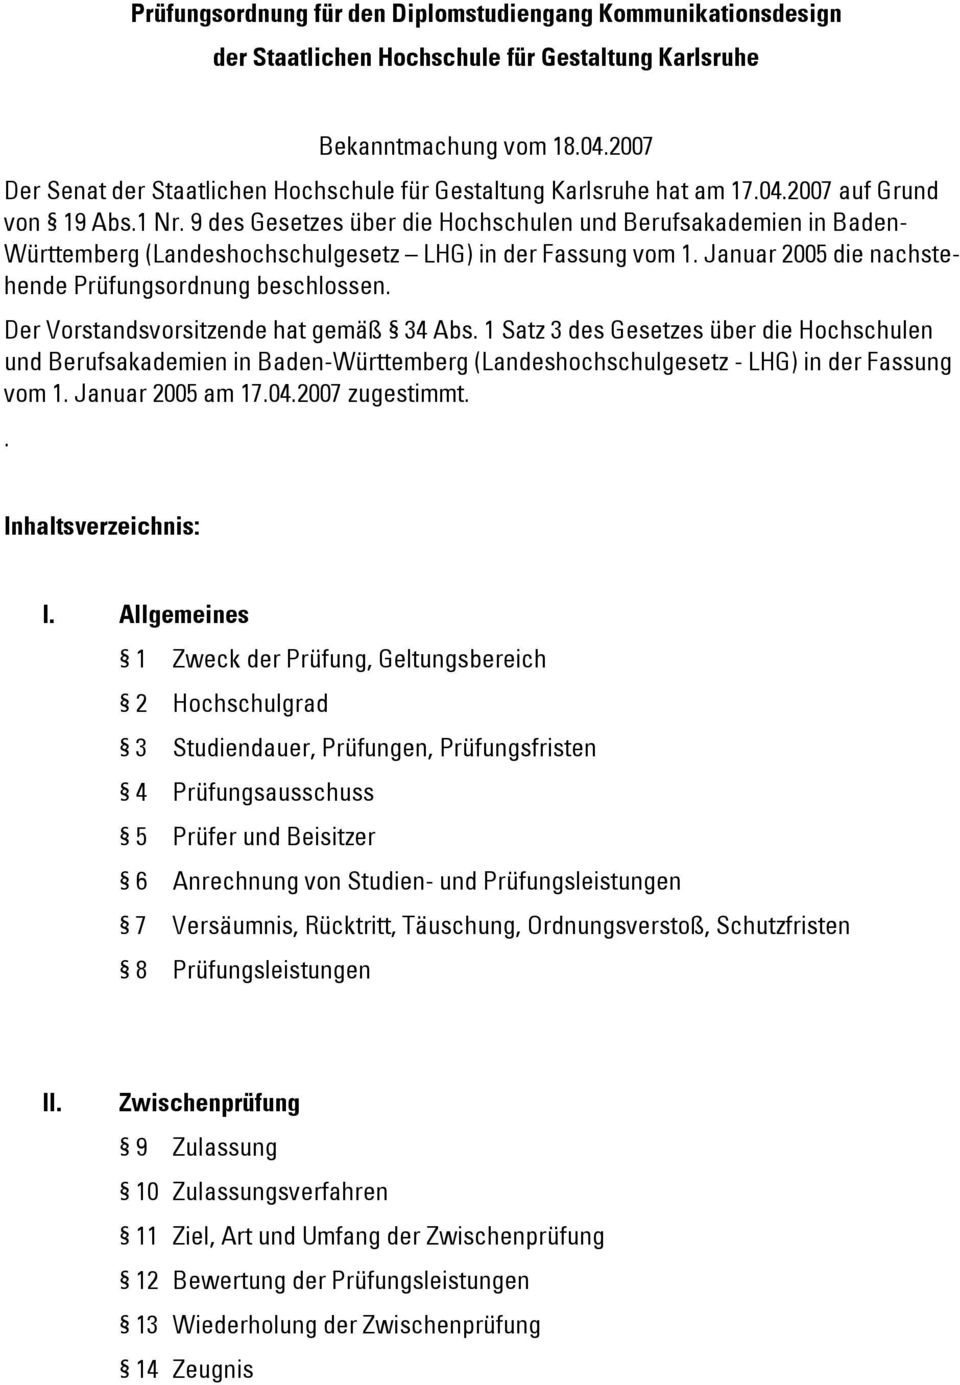 9 des Gesetzes über die Hochschulen und Berufsakademien in Baden- Württemberg (Landeshochschulgesetz LHG) in der Fassung vom 1. Januar 2005 die nachstehende Prüfungsordnung beschlossen.